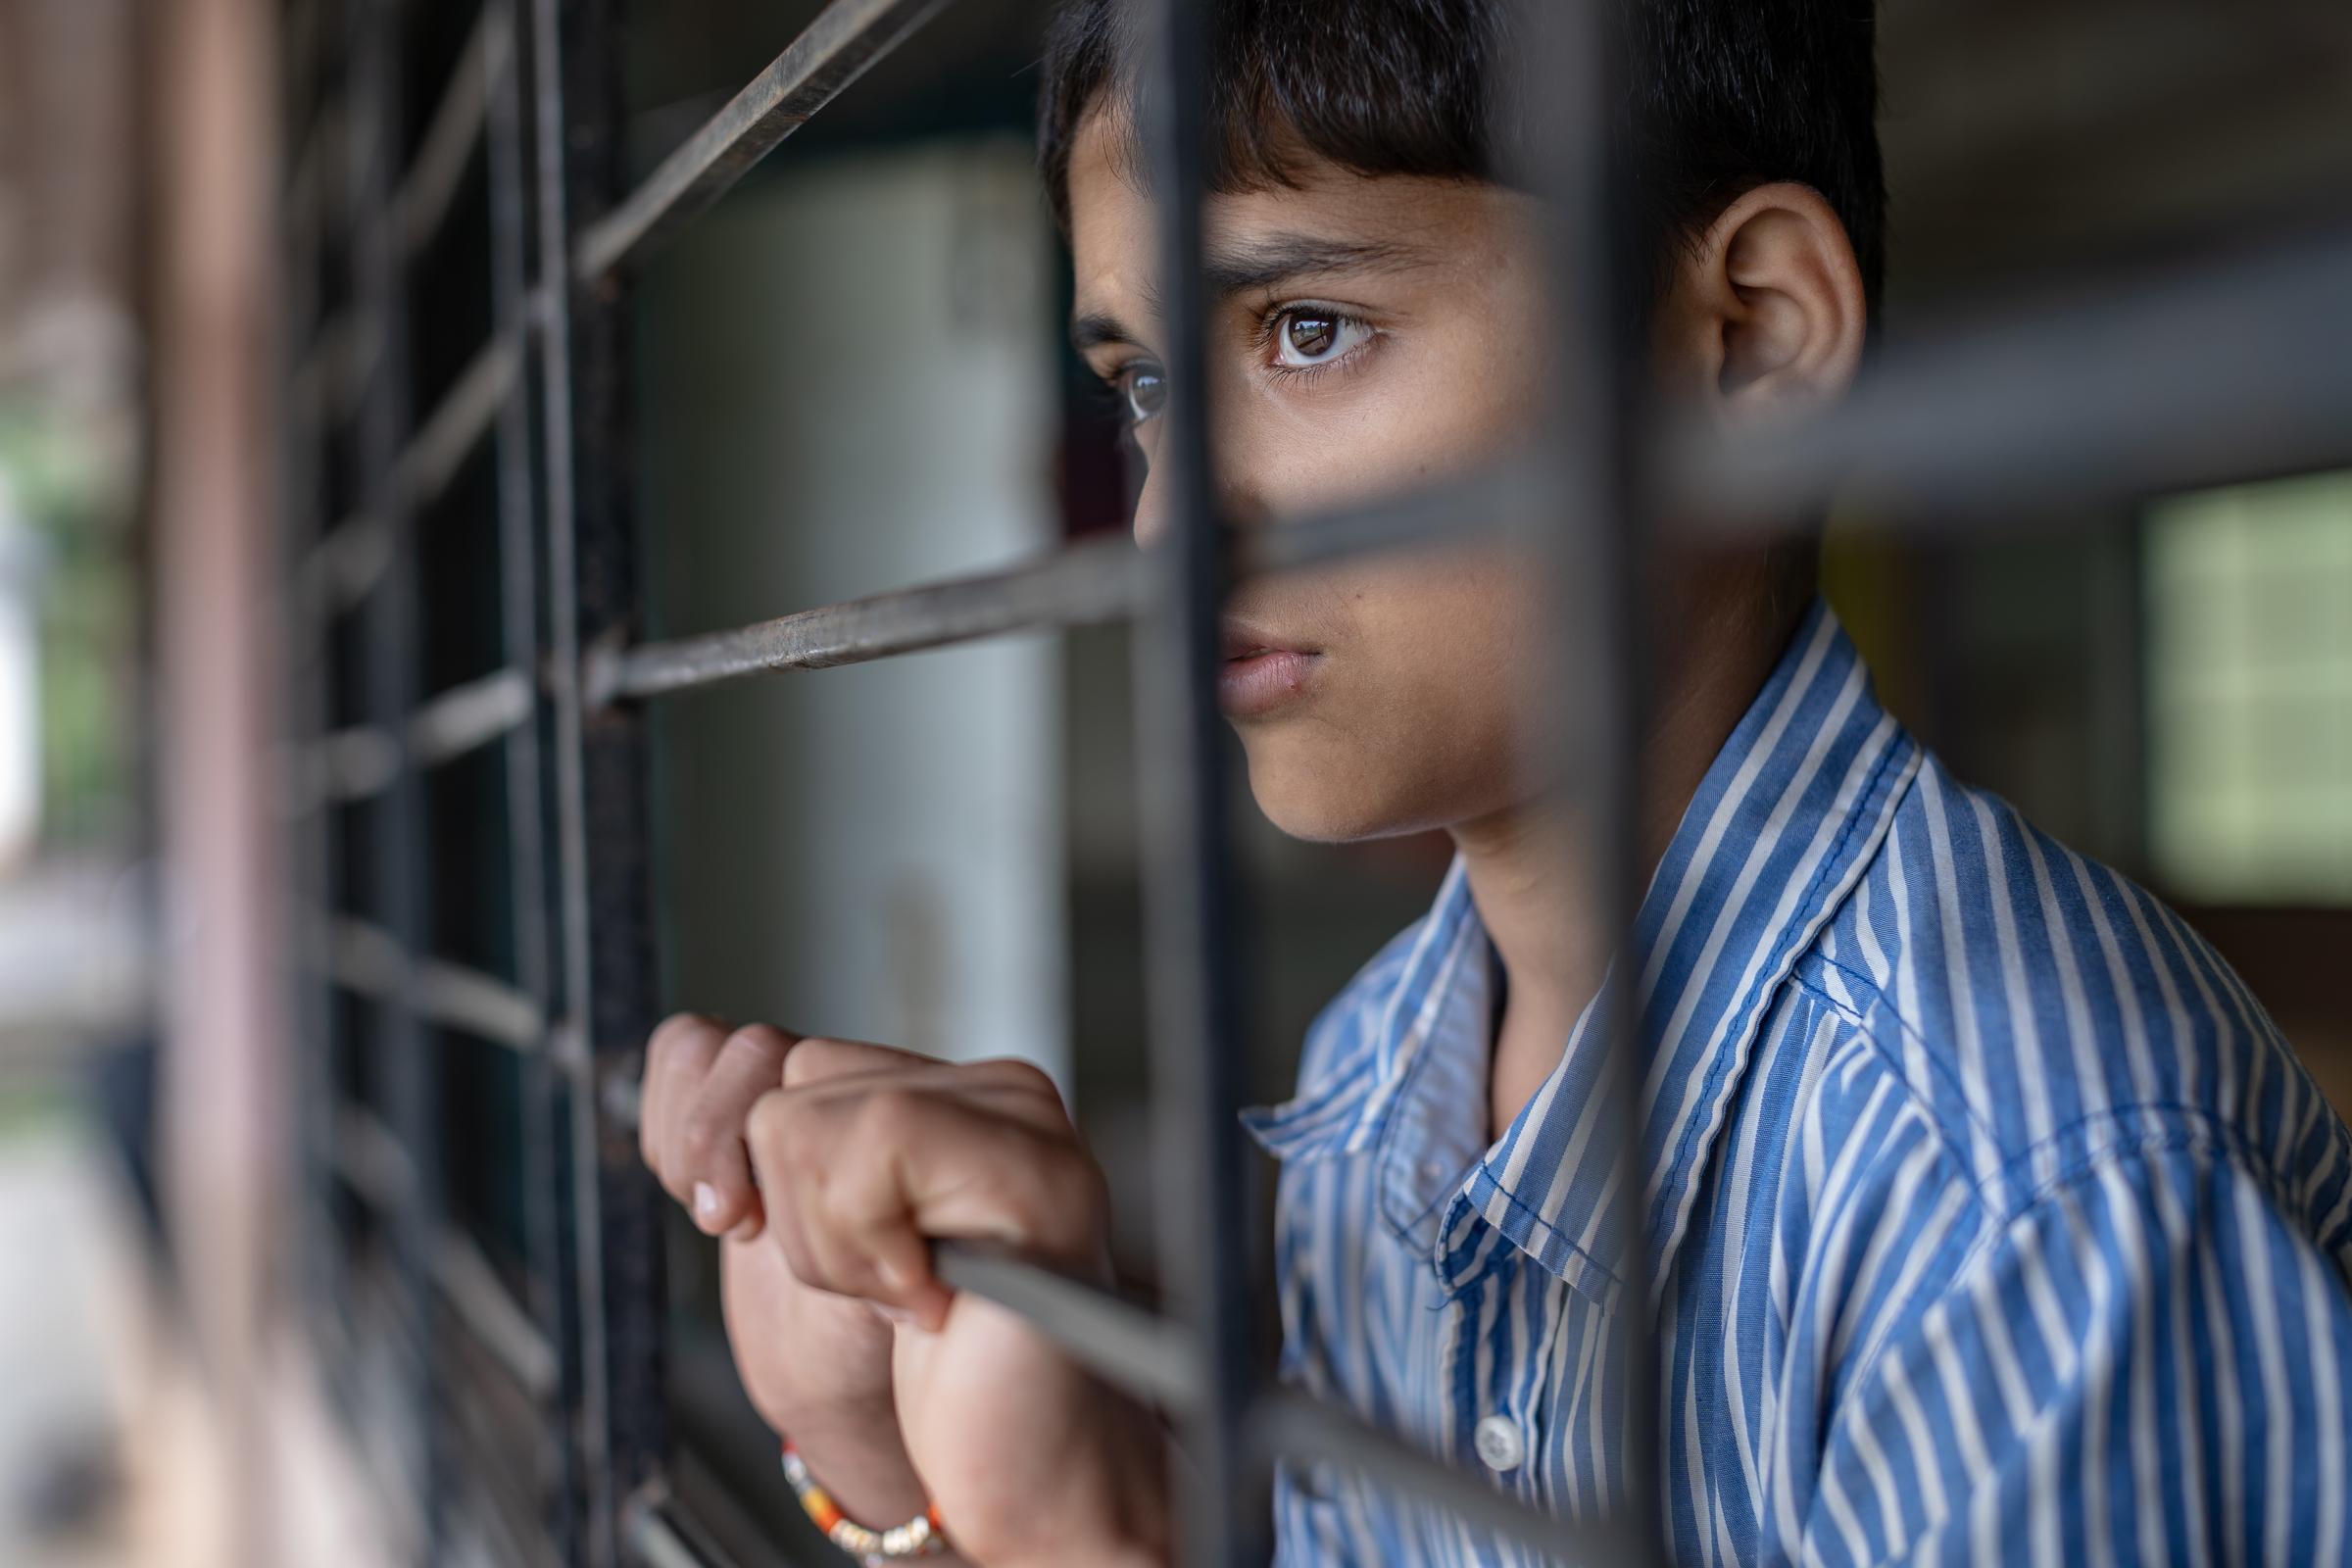 Junge hinter Gitter blickt nach draußen (Quelle: Jakob Studnar)